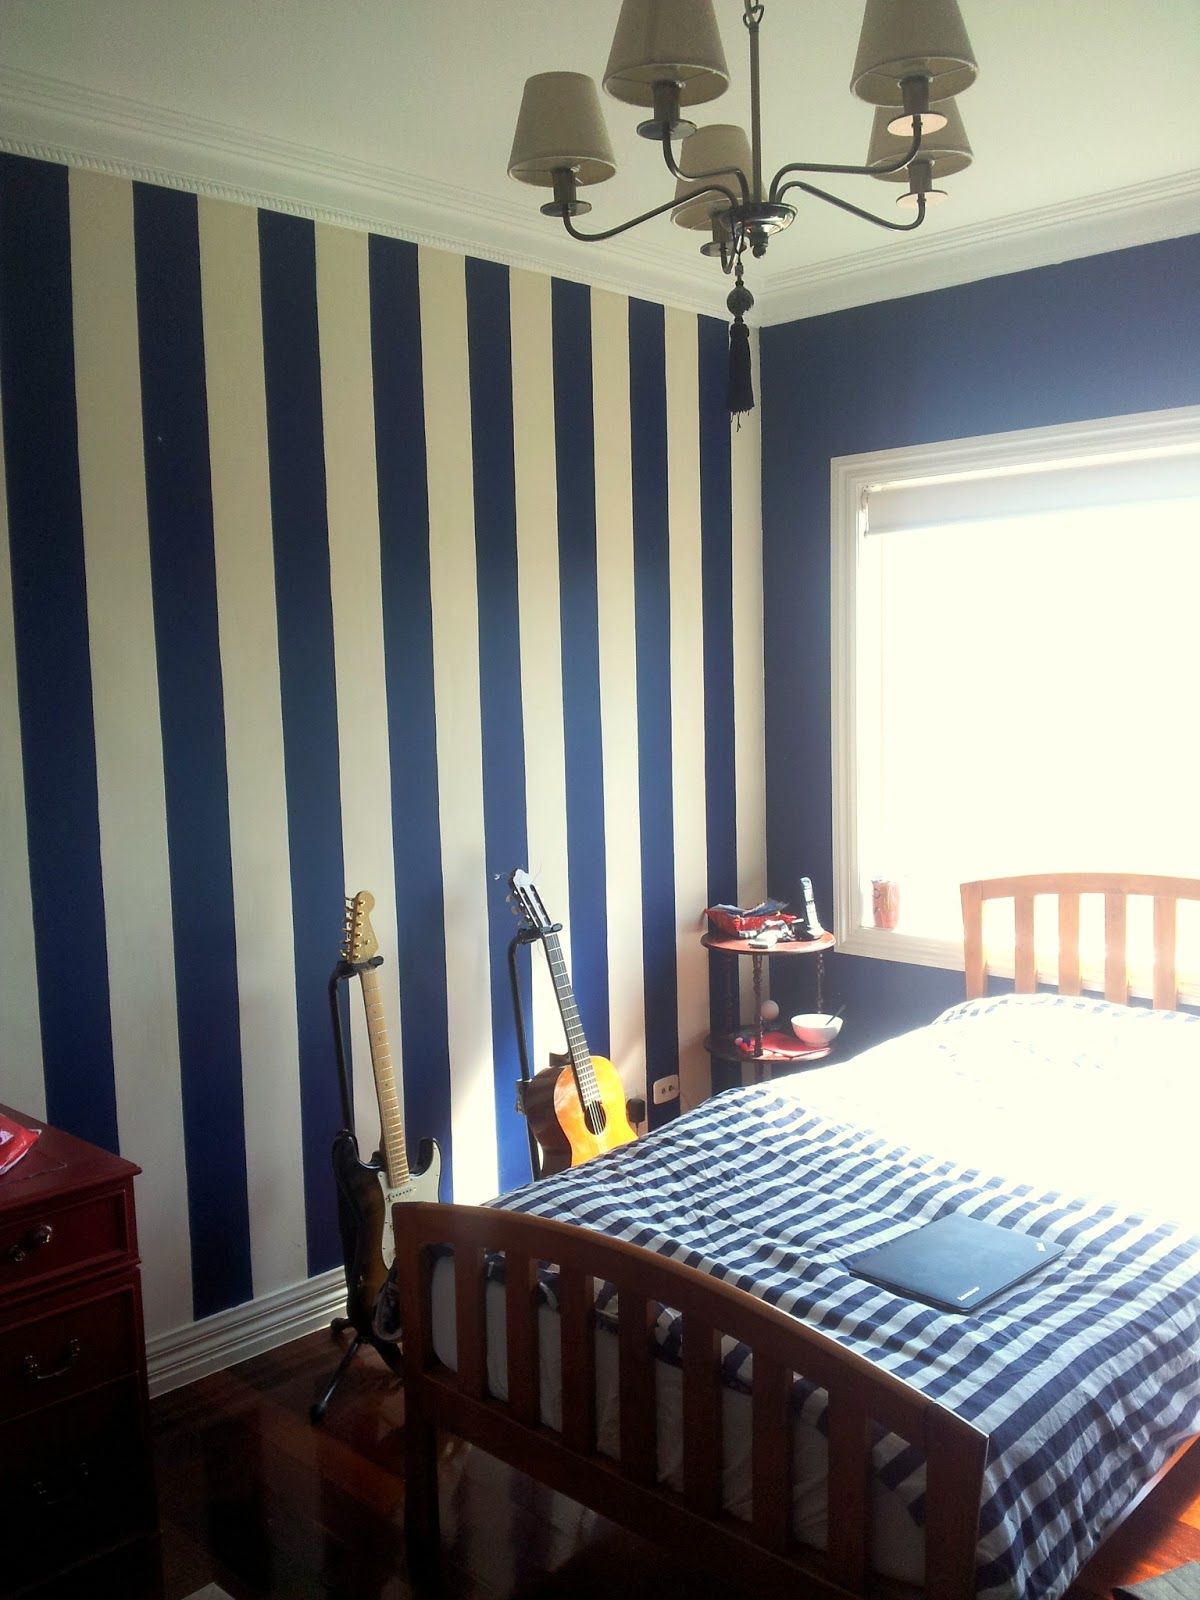 carta da parati blu navy per pareti,camera,camera da letto,mobilia,letto,lenzuolo